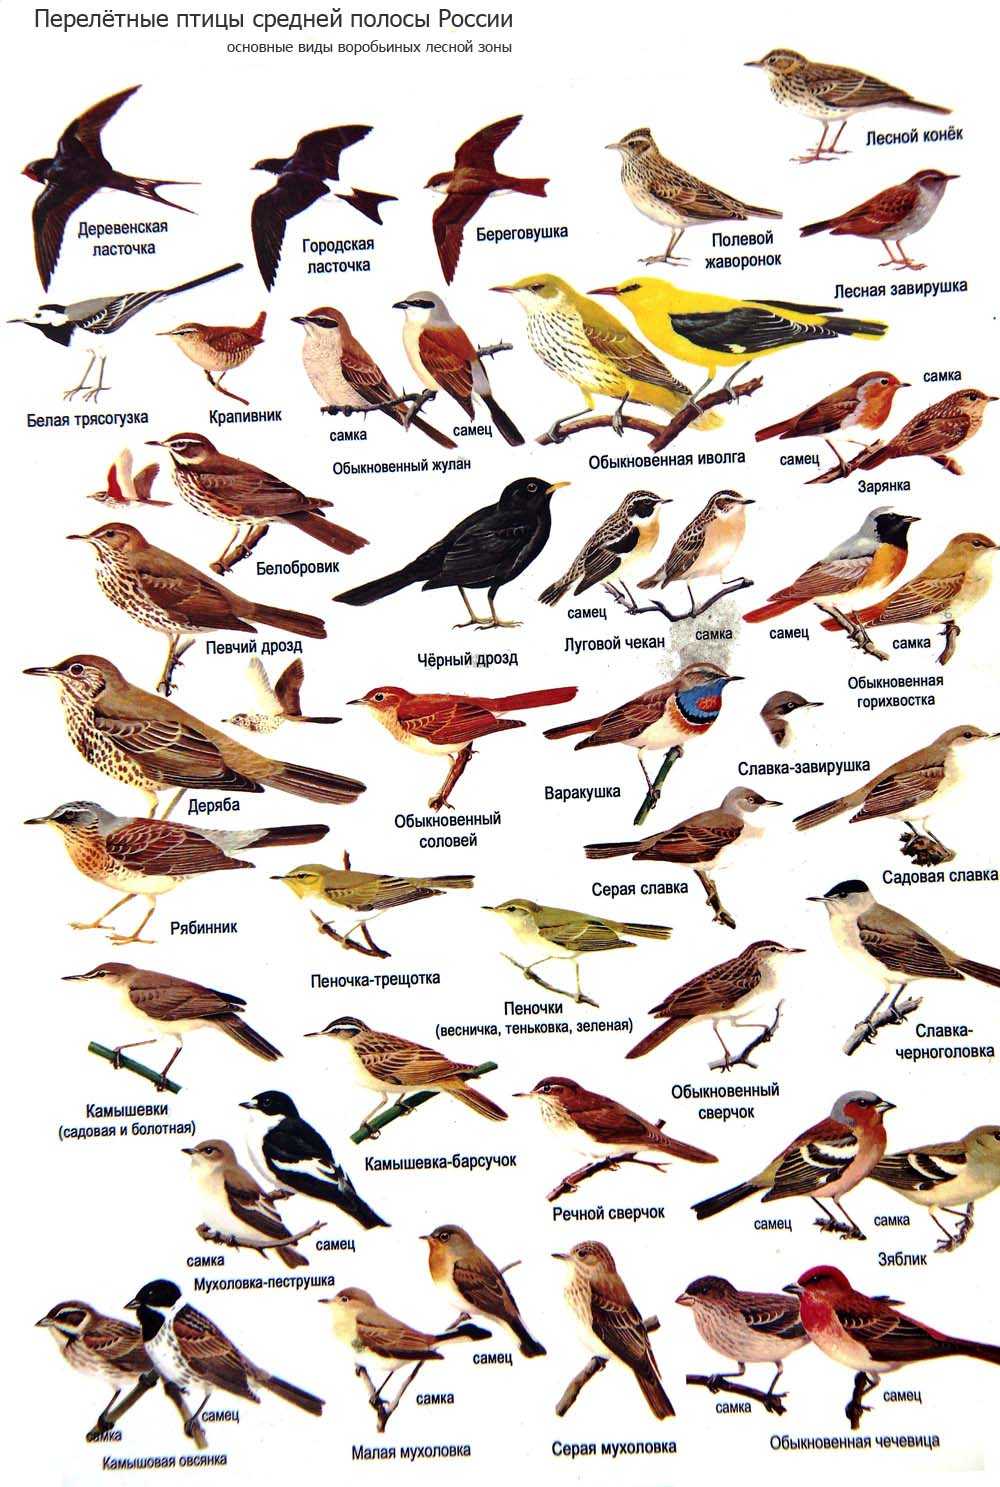 Всего в средней полосе России насчитывается не менее 170 видов птиц, о некоторых из них расскажем в этой статье